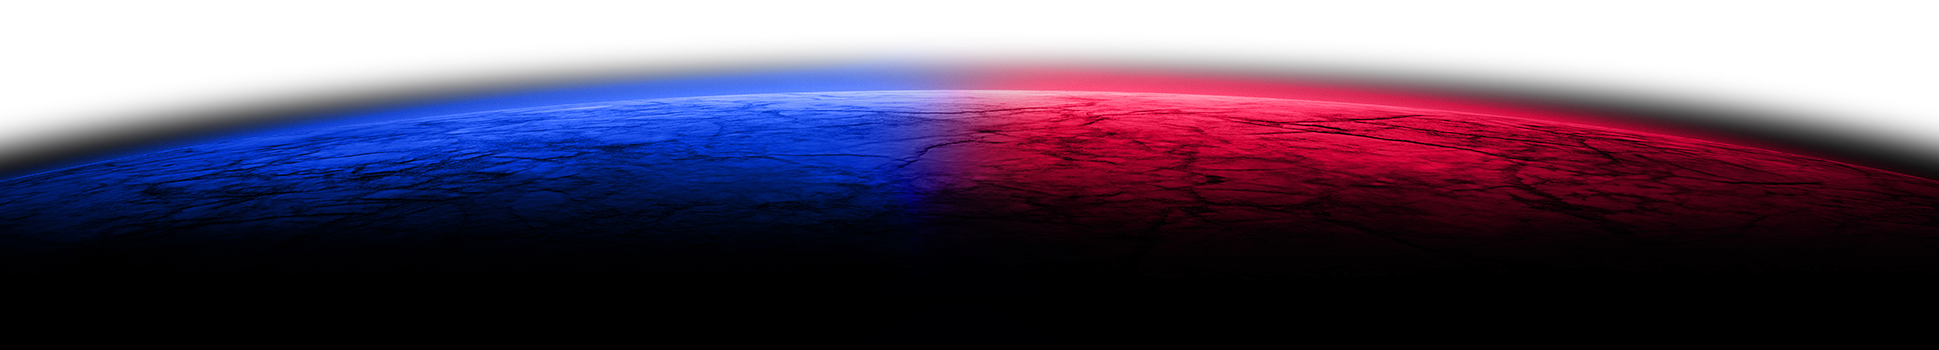 space horizon